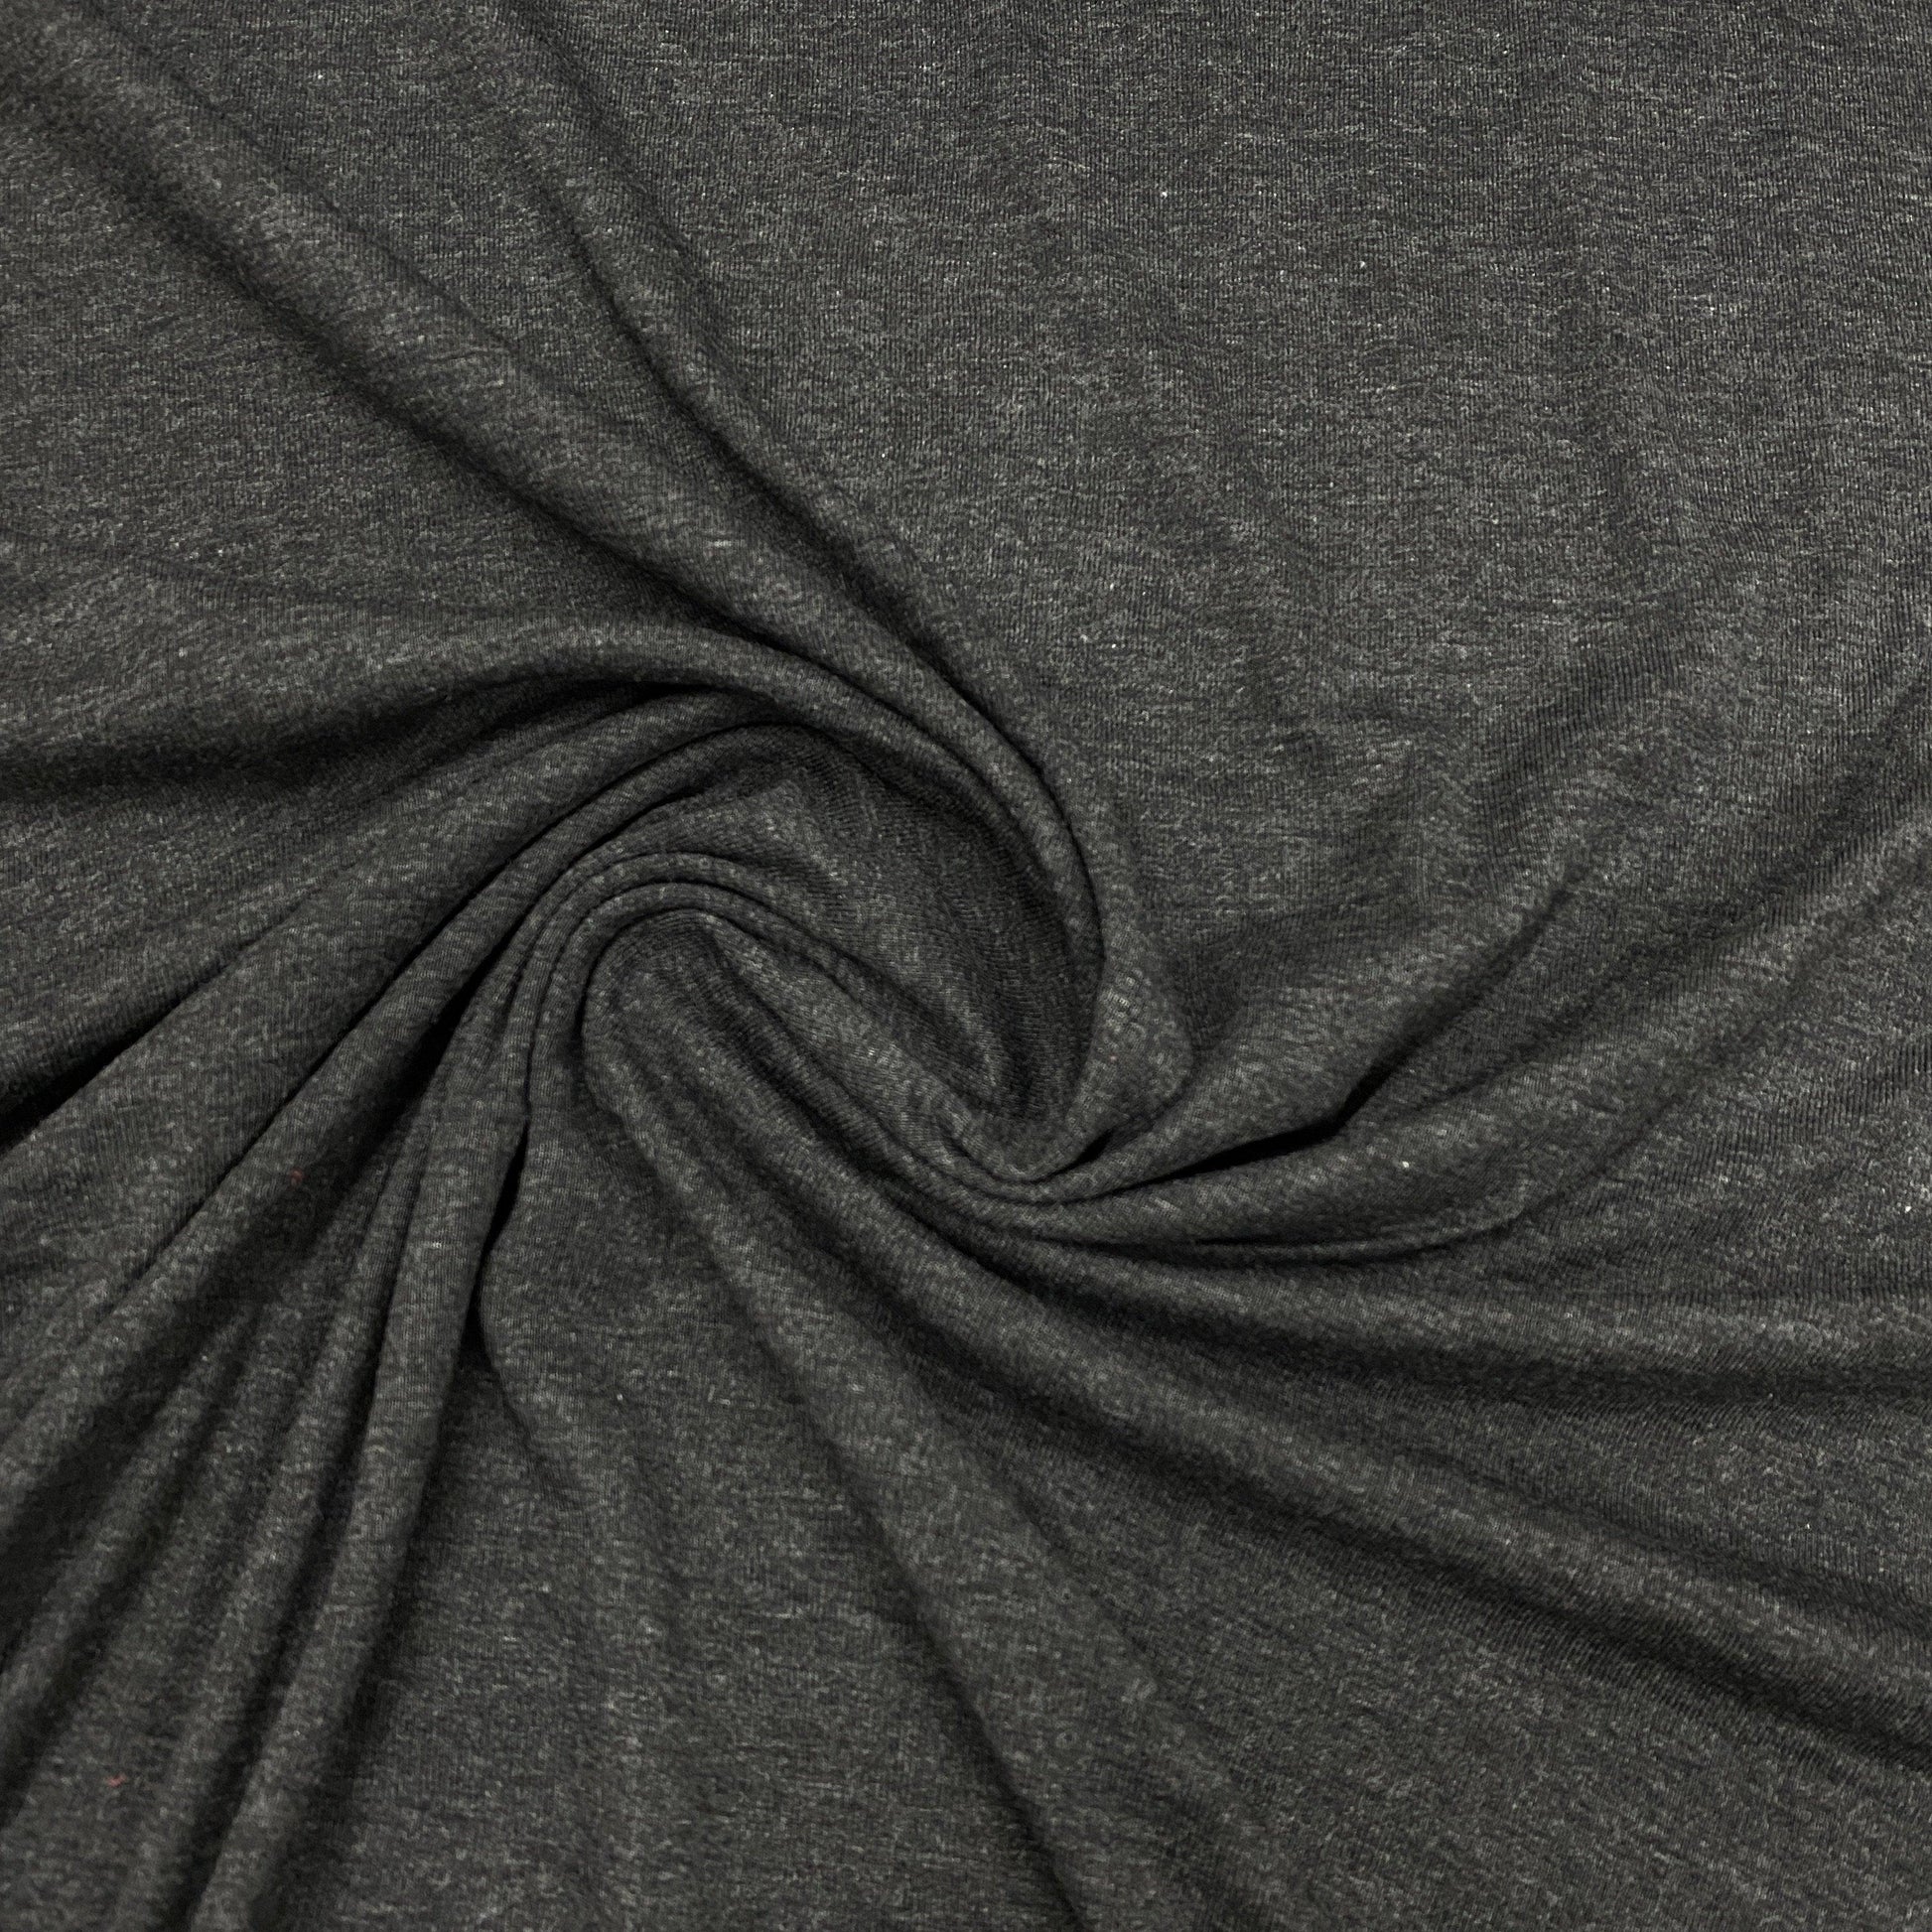 Charcoal Heather Organic Cotton Rib Knit Fabric - Nature's Fabrics